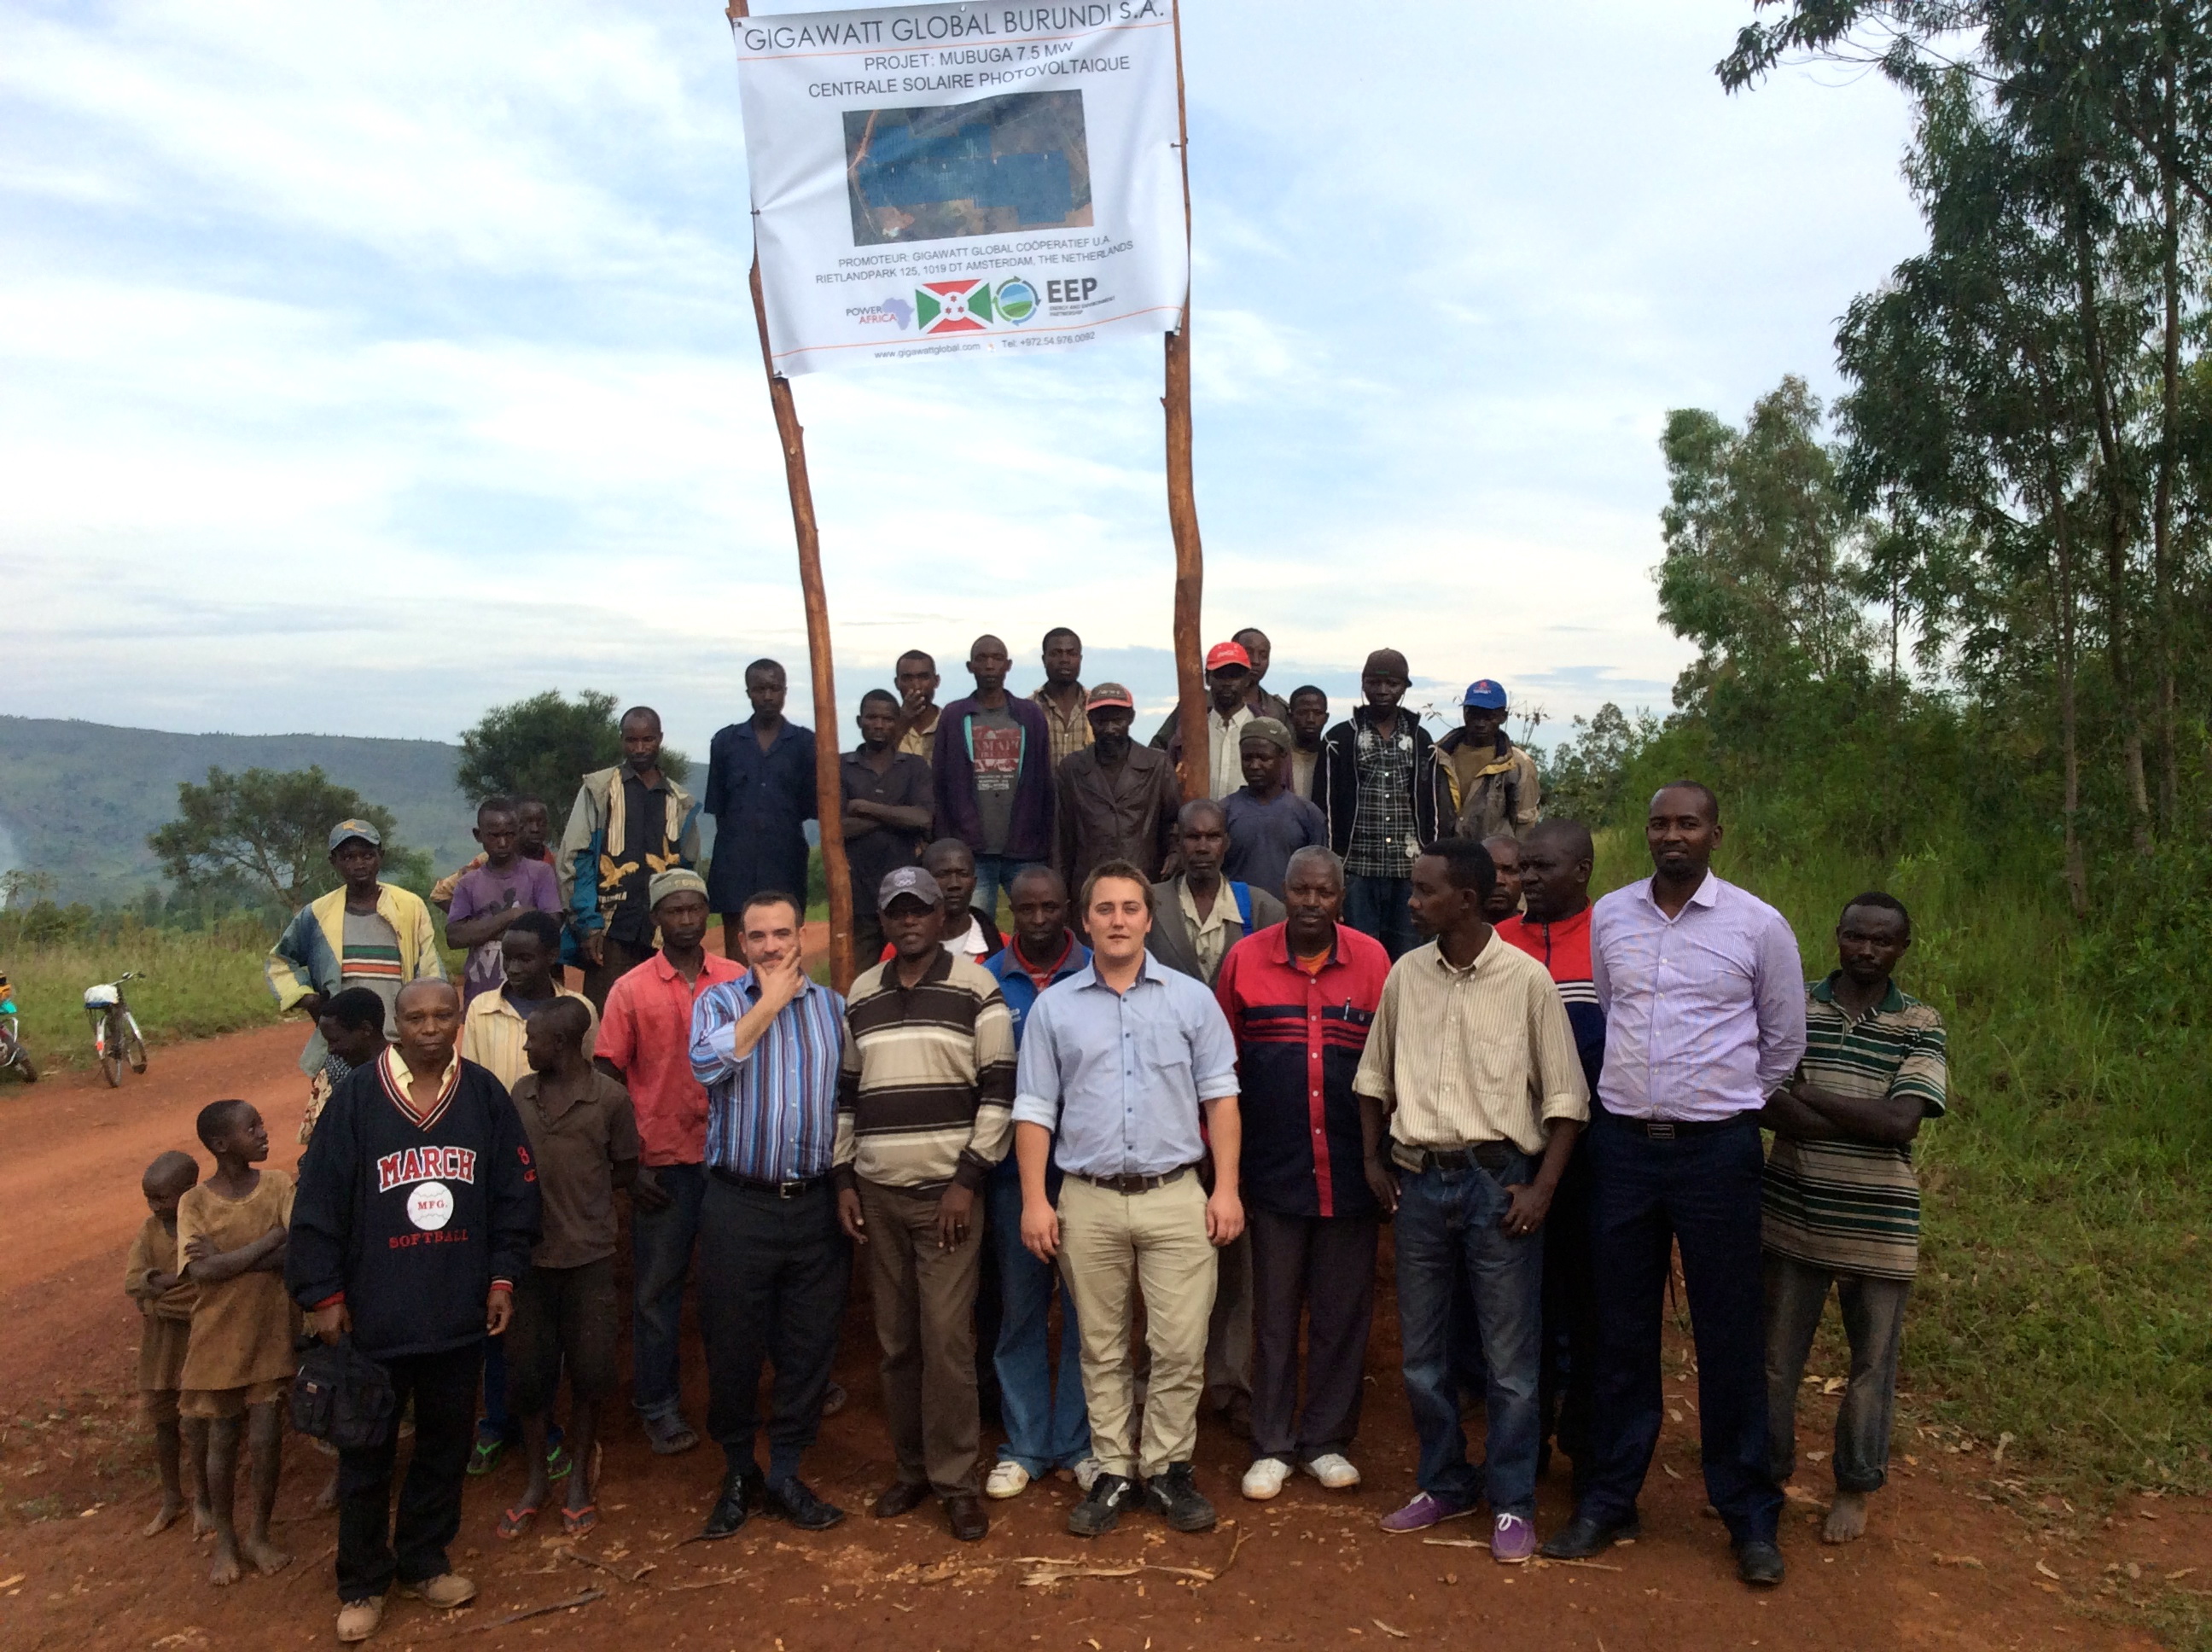 GigaWatt Global Solar project in Burundi